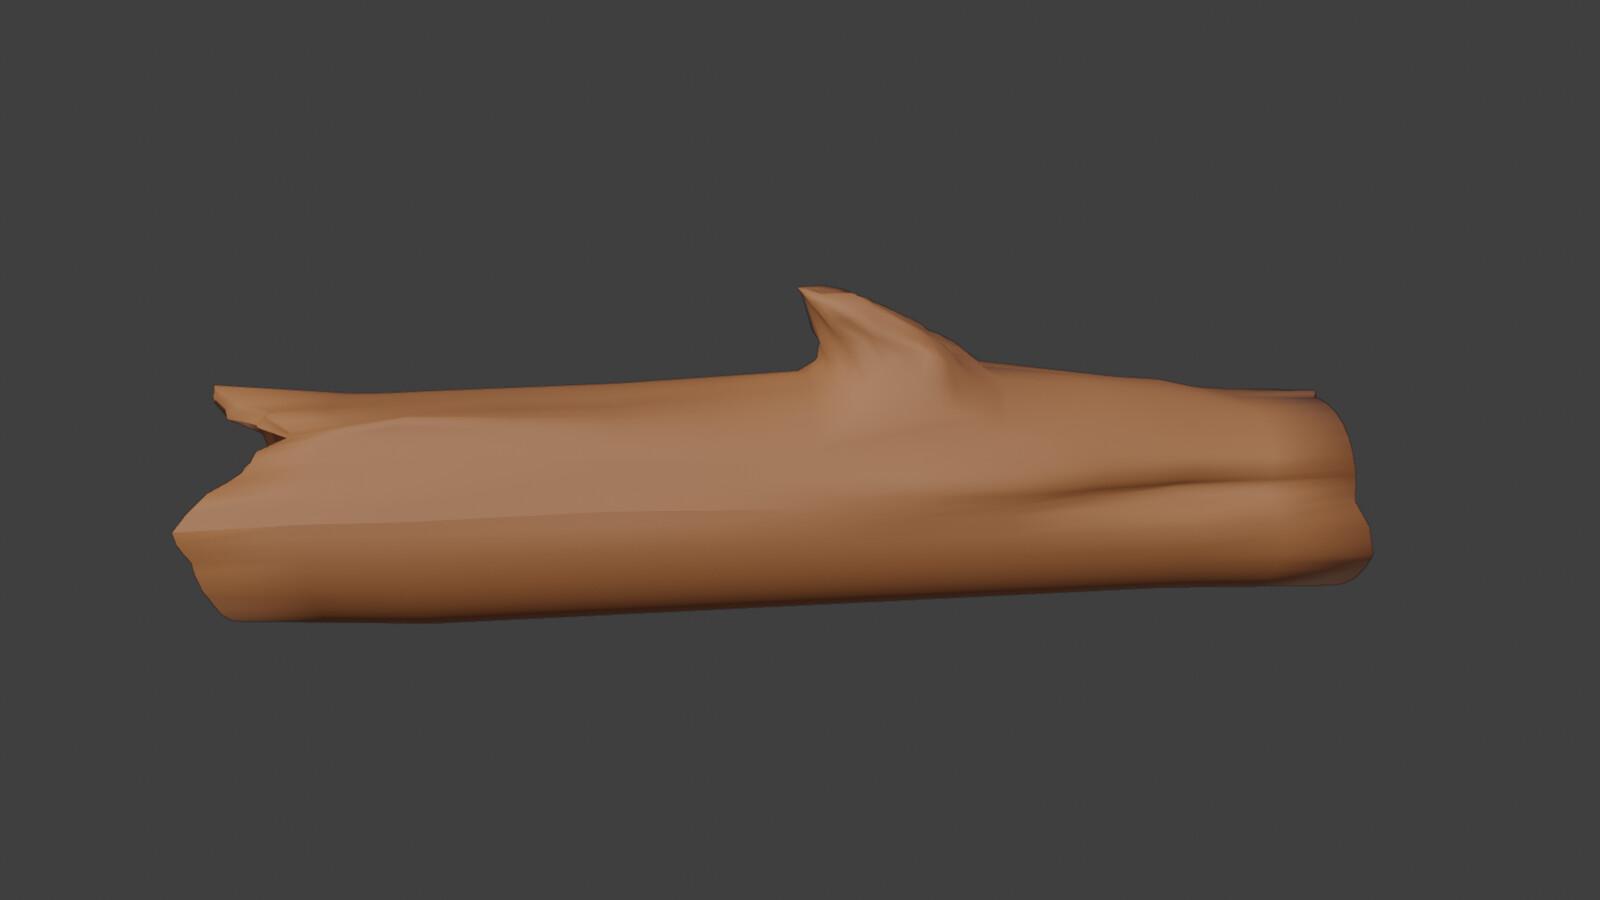 I have 3D modeled this wooden log in Blender.